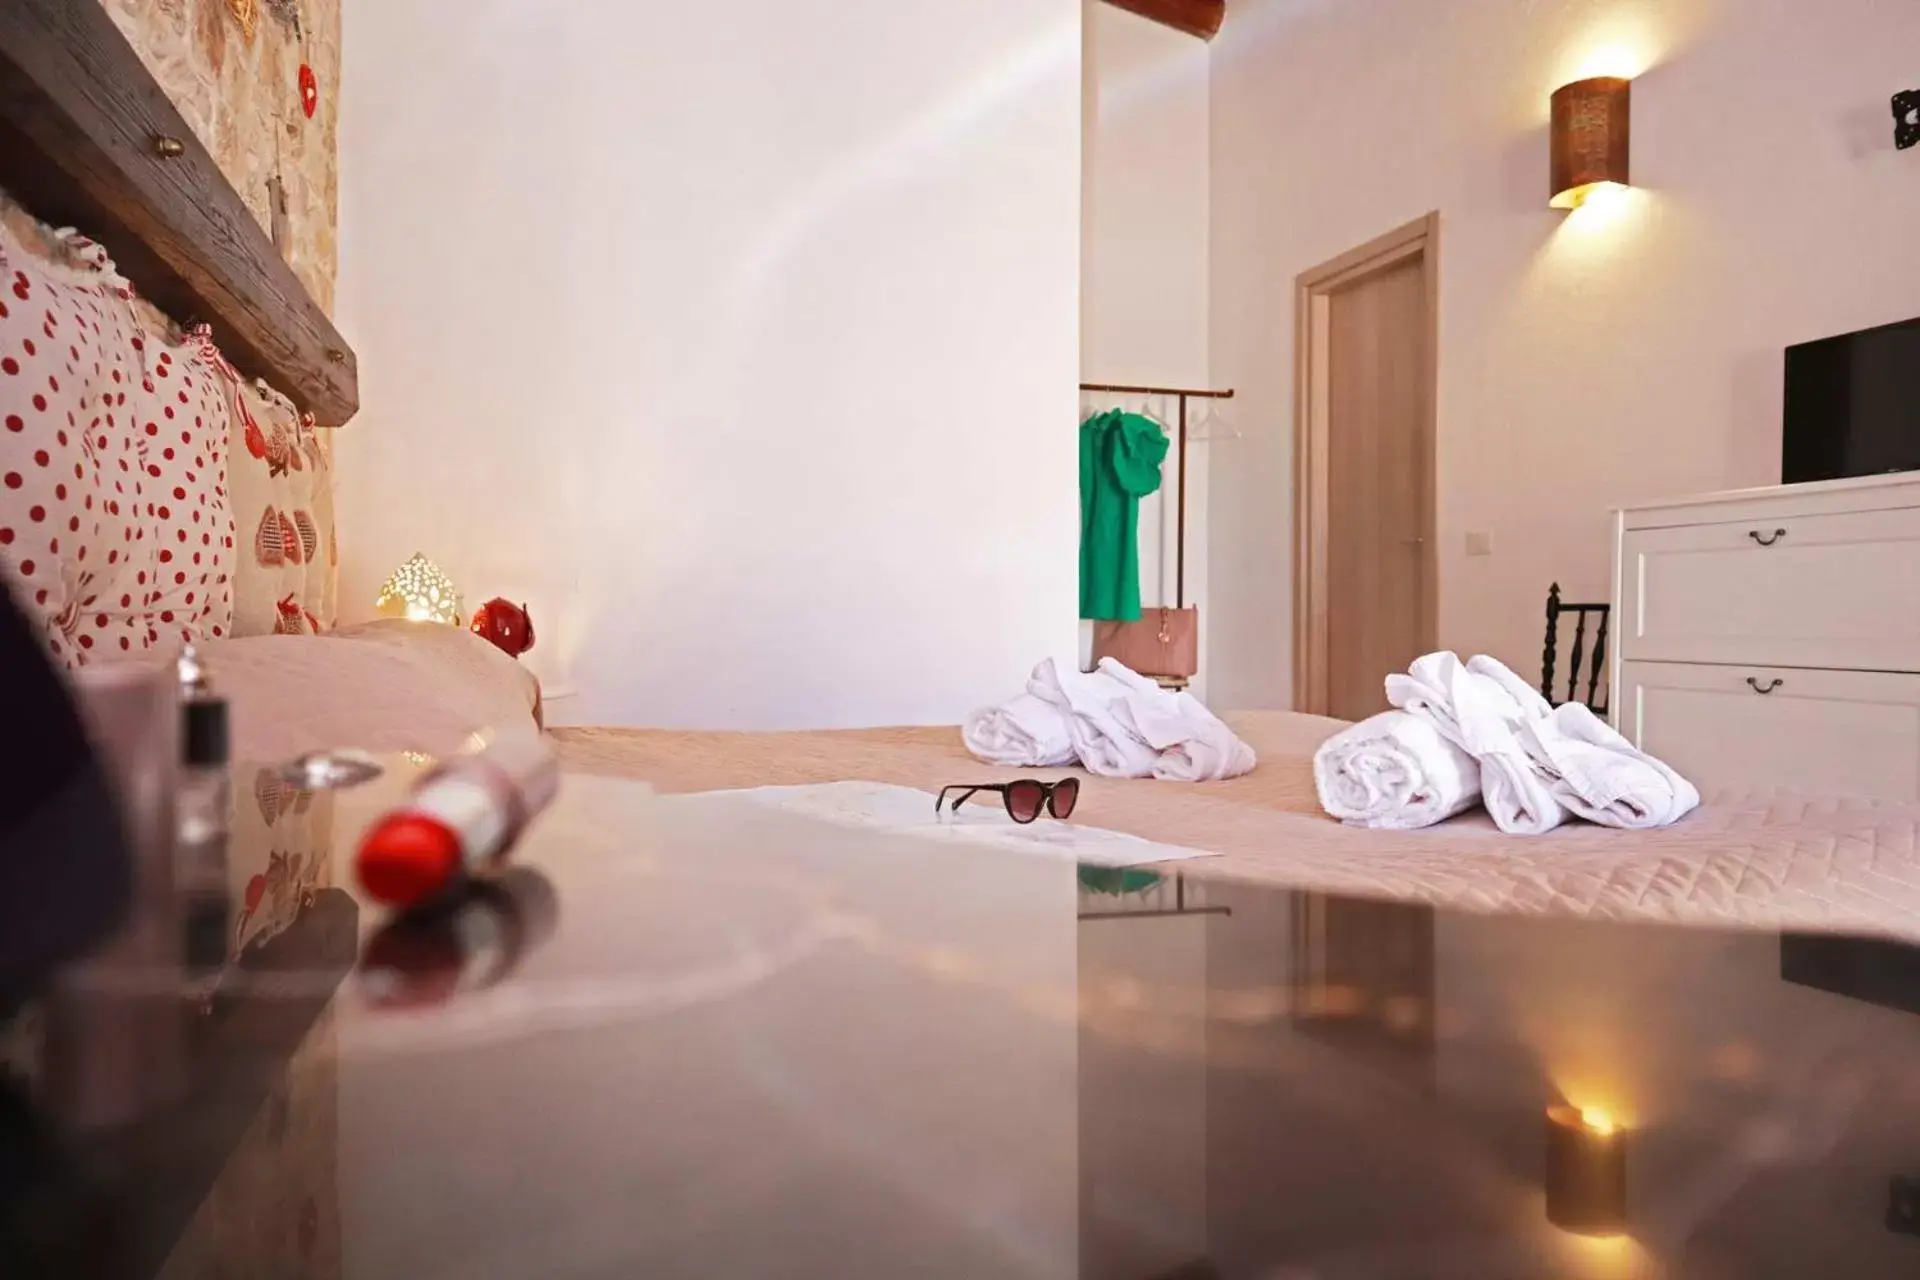 Bedroom, Bathroom in Agriturismo Masseria Alberotanza